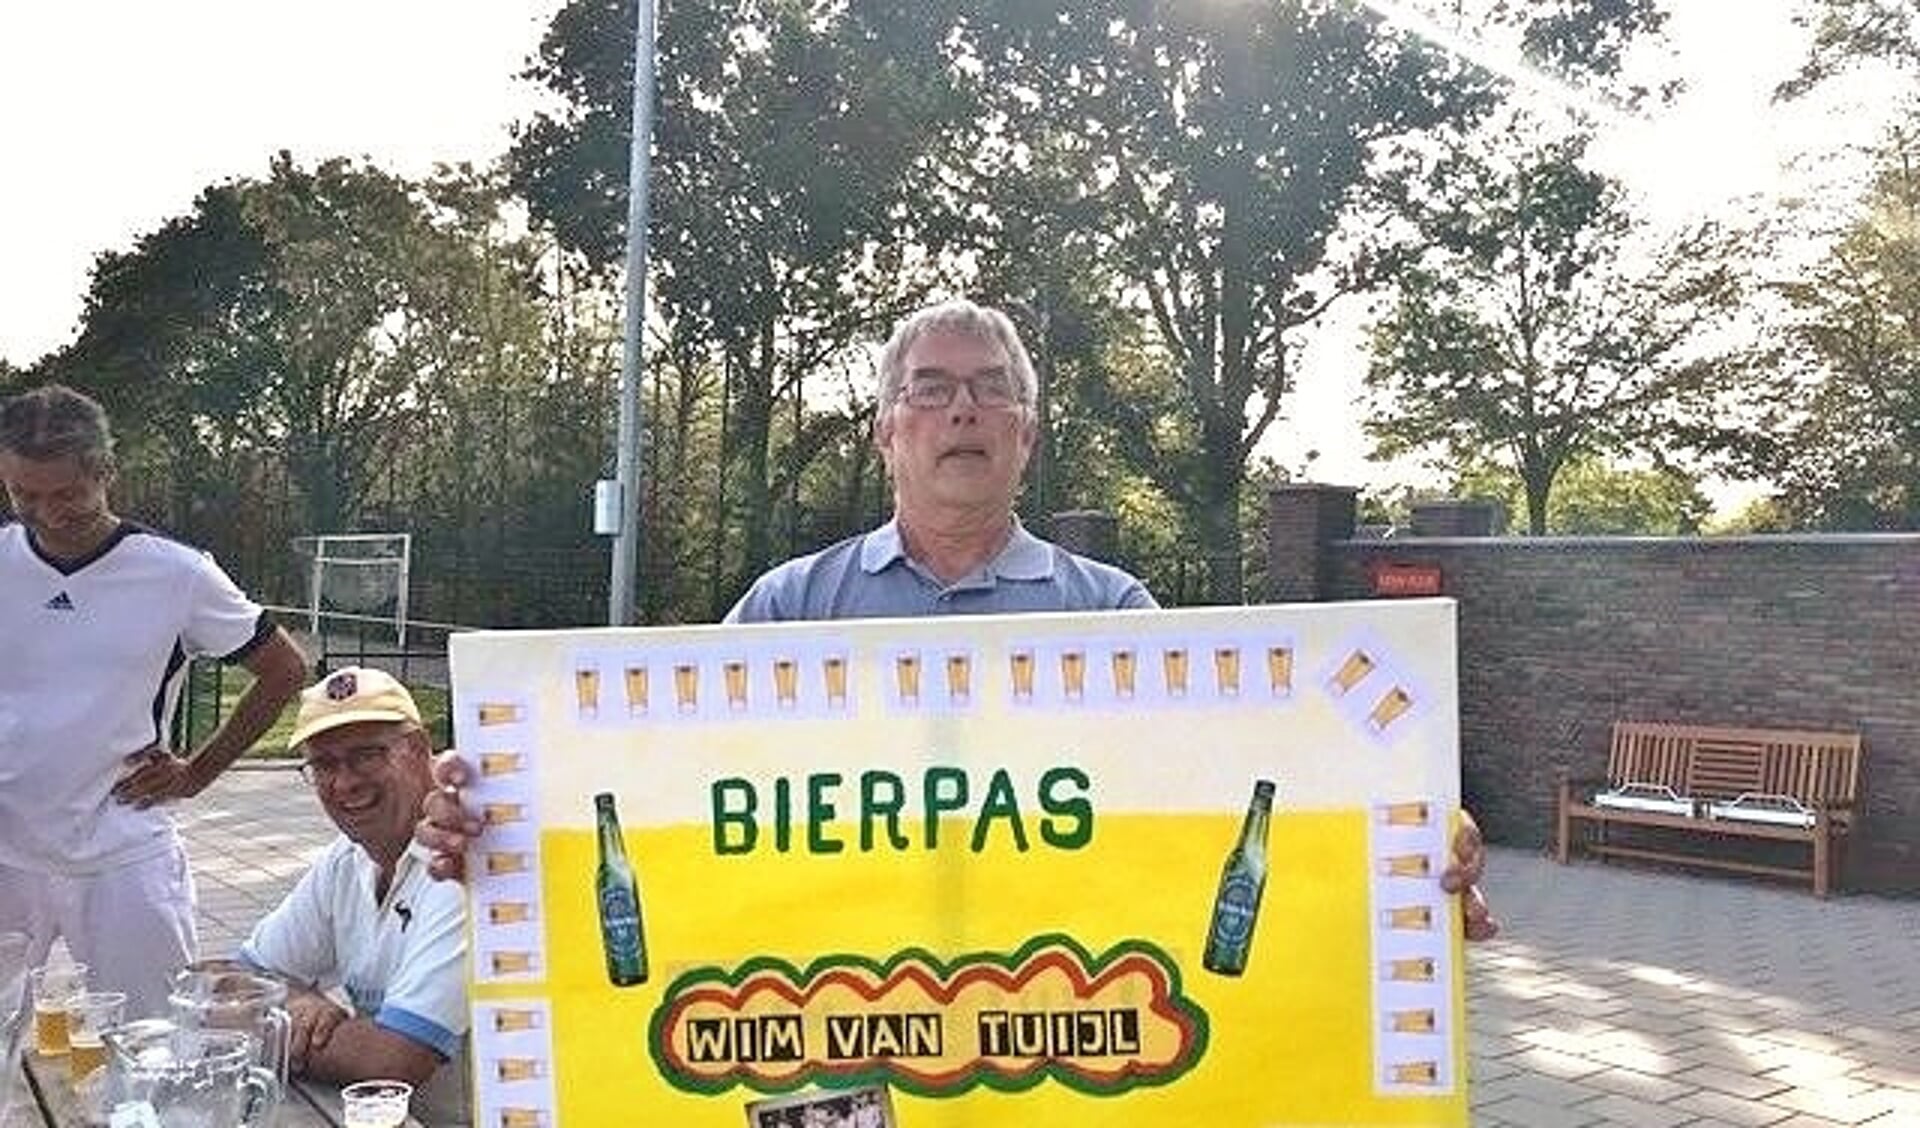 Als dank voor al zijn inspanningen kreeg Wim van Tuijl een bierpas aangeboden. | Foto website ASC